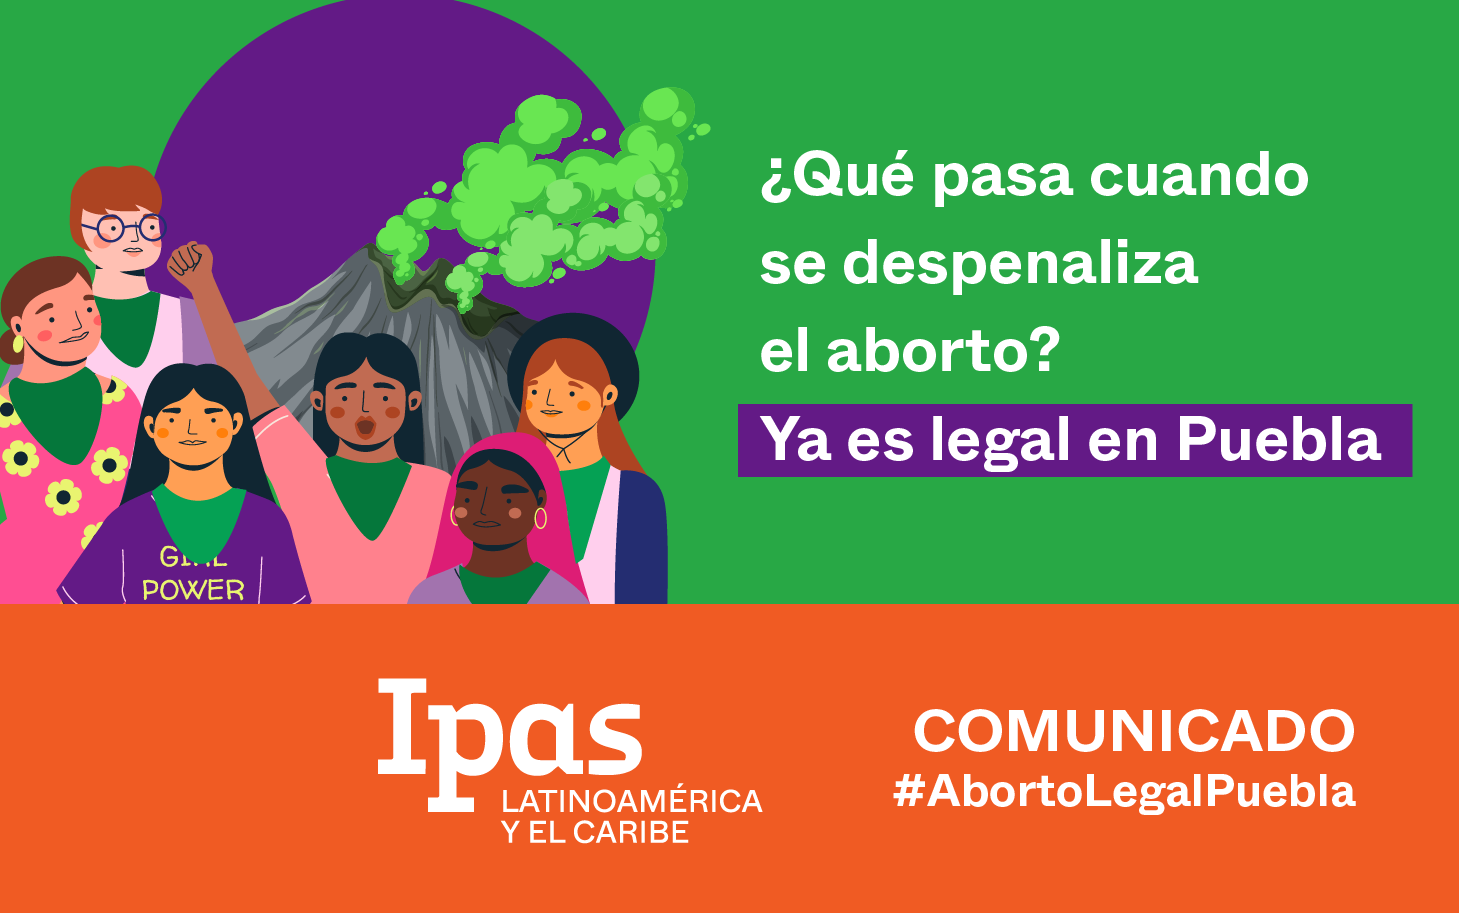 ¿Qué pasa cuando se despenaliza el aborto? Ya es legal en Puebla